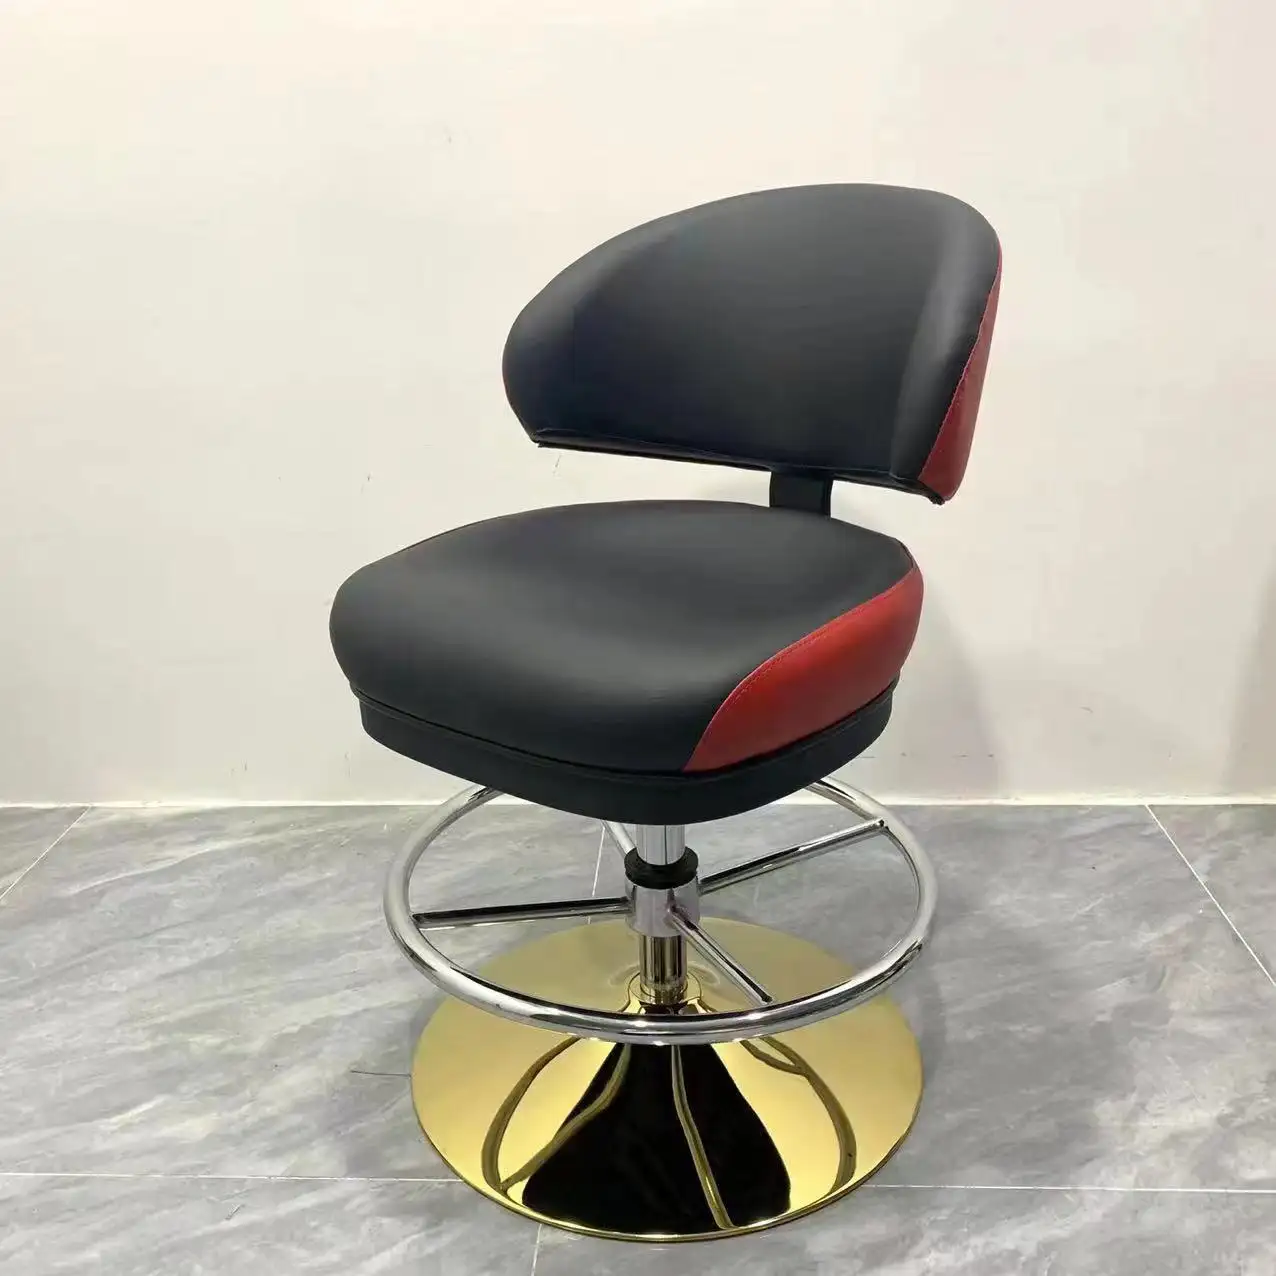 Cadeira de pôquer com pernas de metal com assento de couro ajustável em altura, cadeiras giratórias de 360 graus para cassino